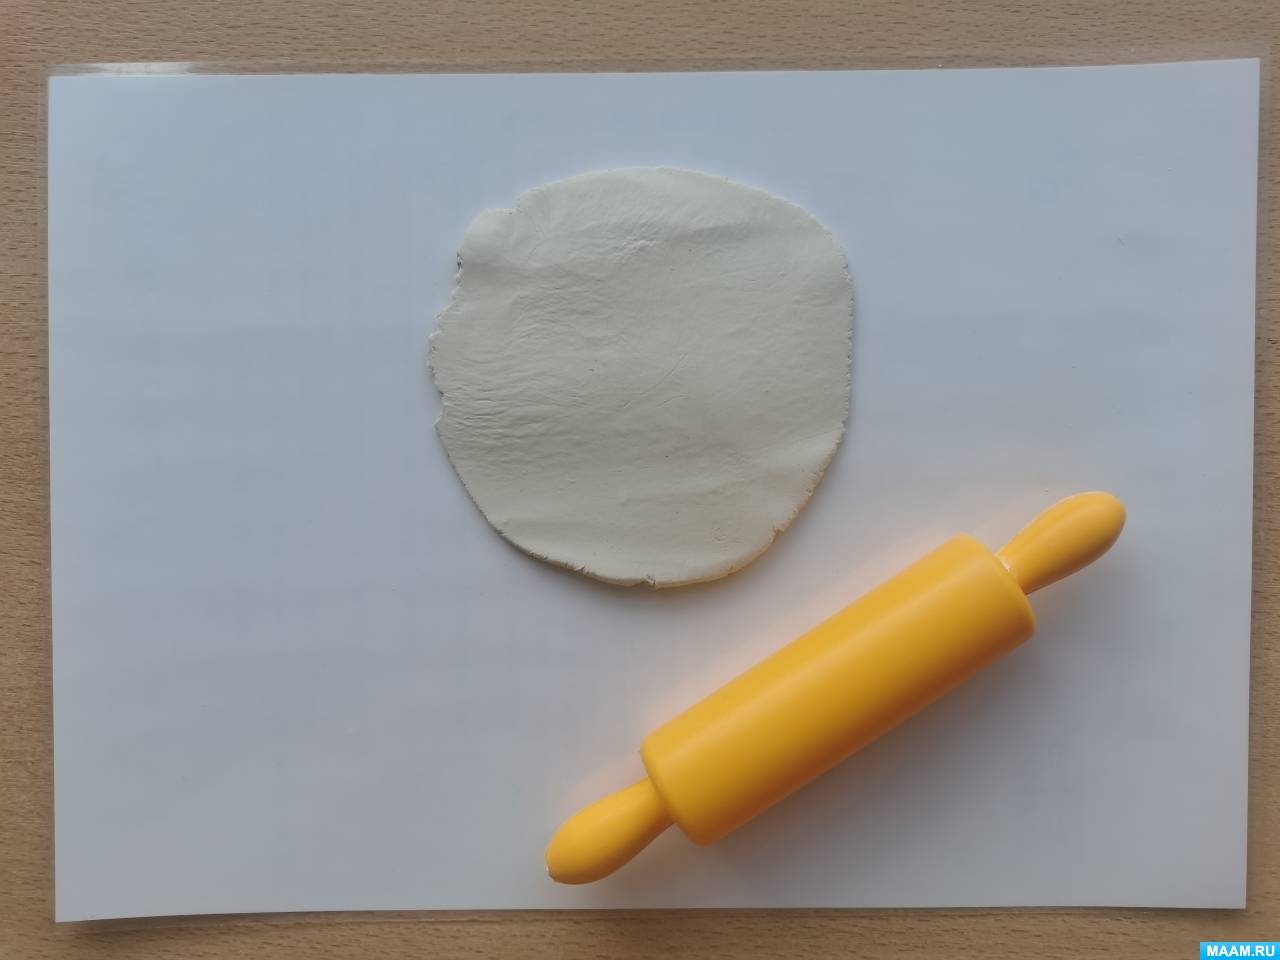 Уроки лепки из глины для начинающих: обучение технике ручной лепки